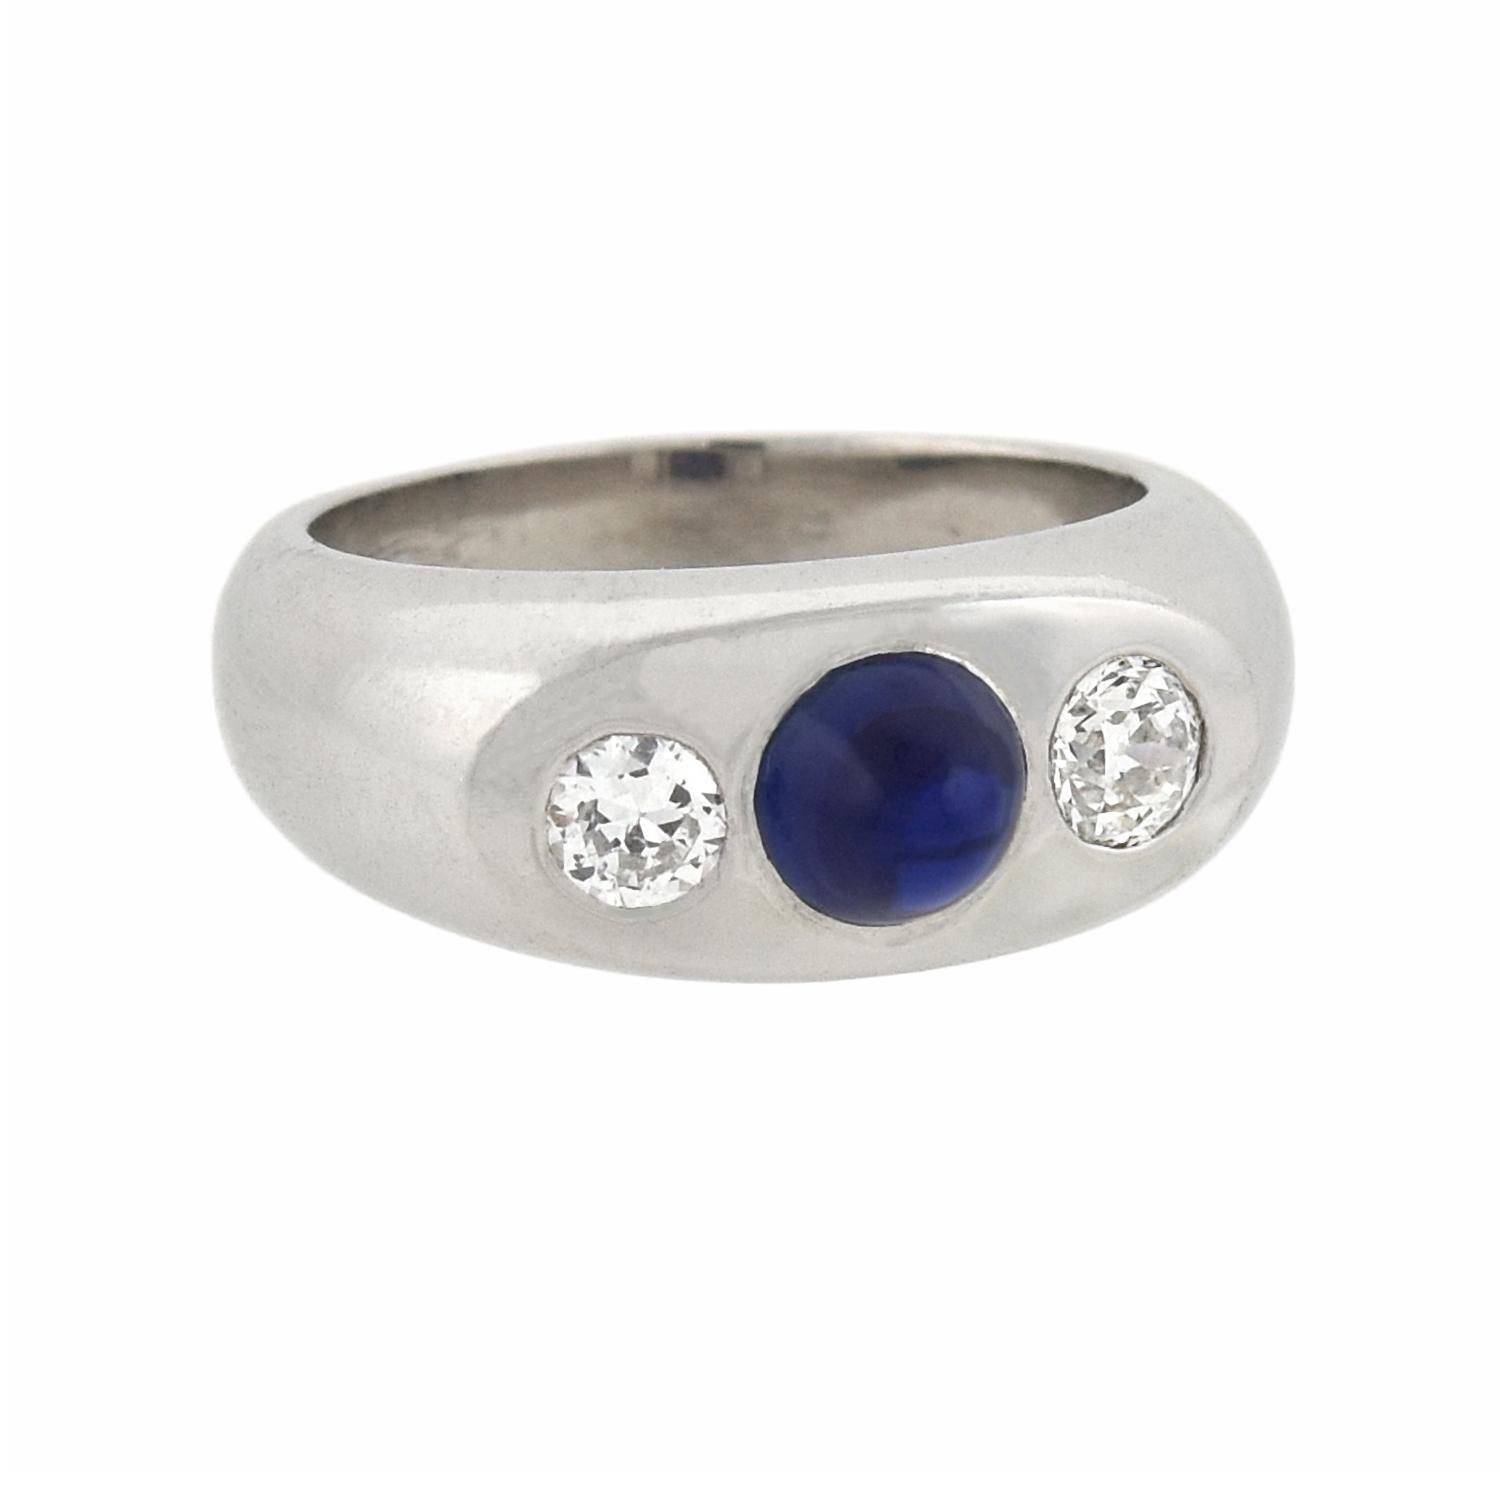 Eine absolut atemberaubende Diamant und Saphir 3-Stein-Ring aus dem Art Deco (ca. 1920er Jahre) Ära! Dieses fabelhafte Stück aus Platin zeichnet sich durch ein kühnes 3-Stein-Design aus, das aus zwei Diamanten und einem einzelnen Saphir besteht. Der